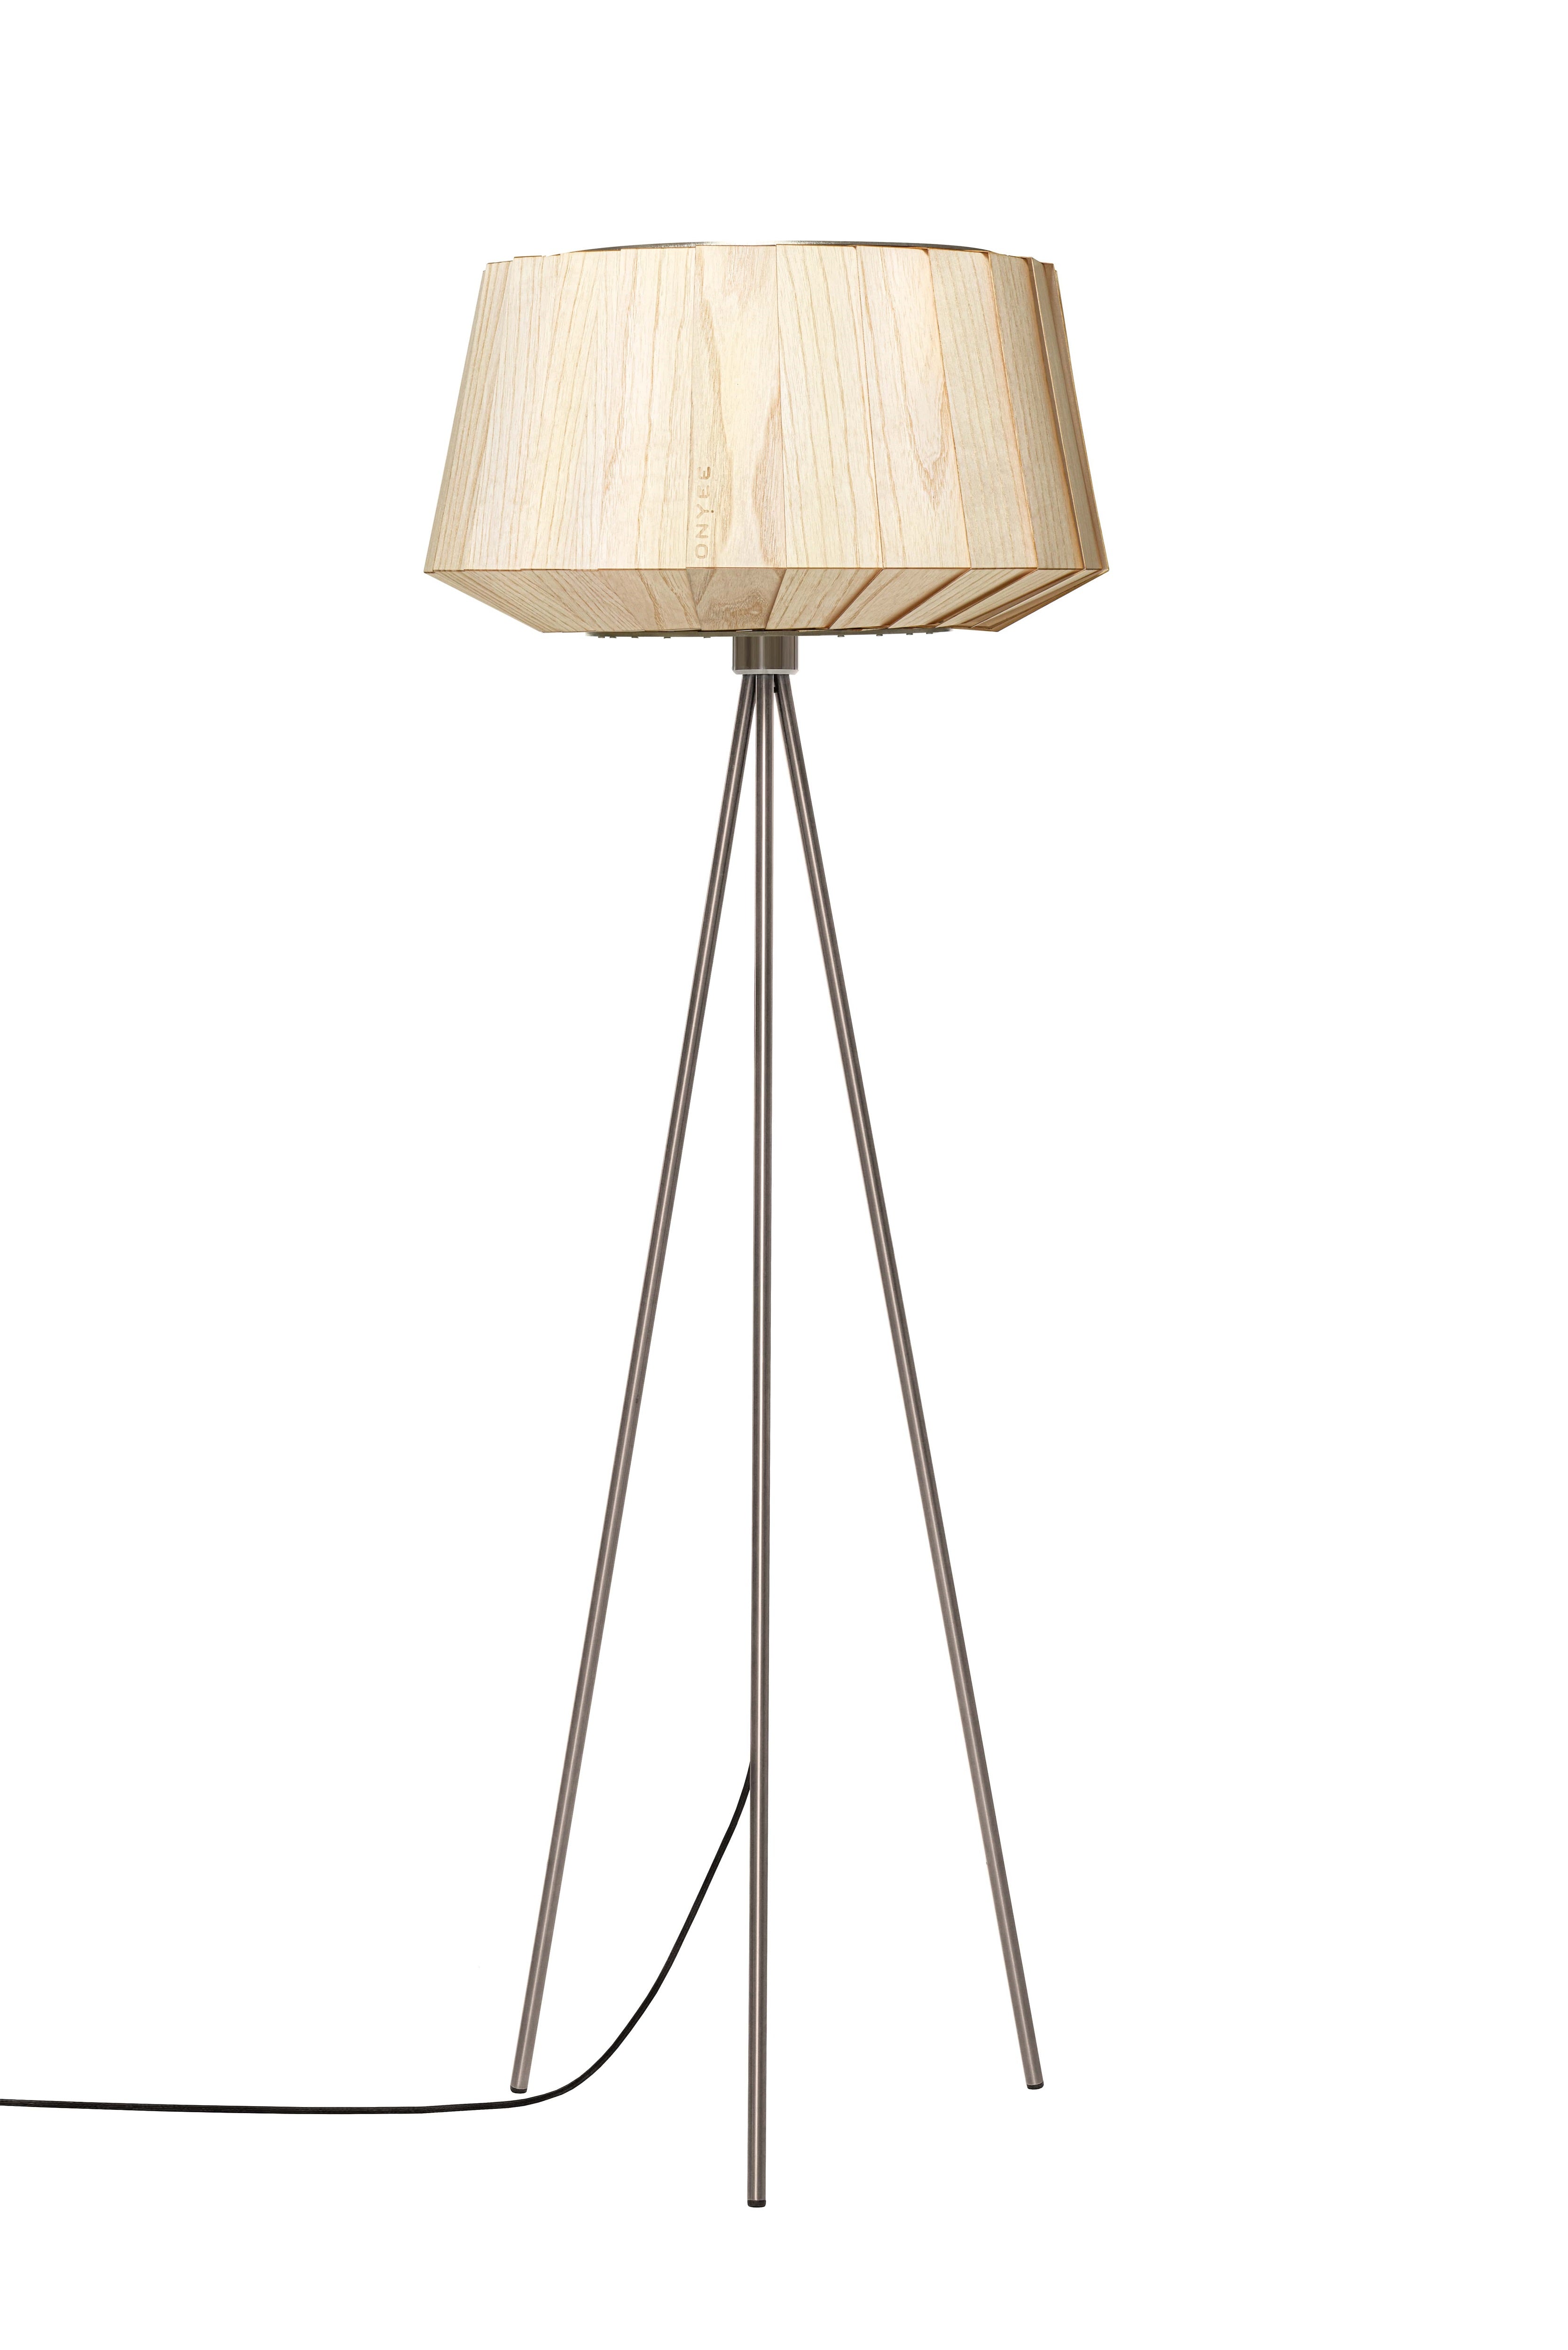 Moderne Holz Stehlampe in Esche natur mit Ständer aus gebürstetem Edelstahl